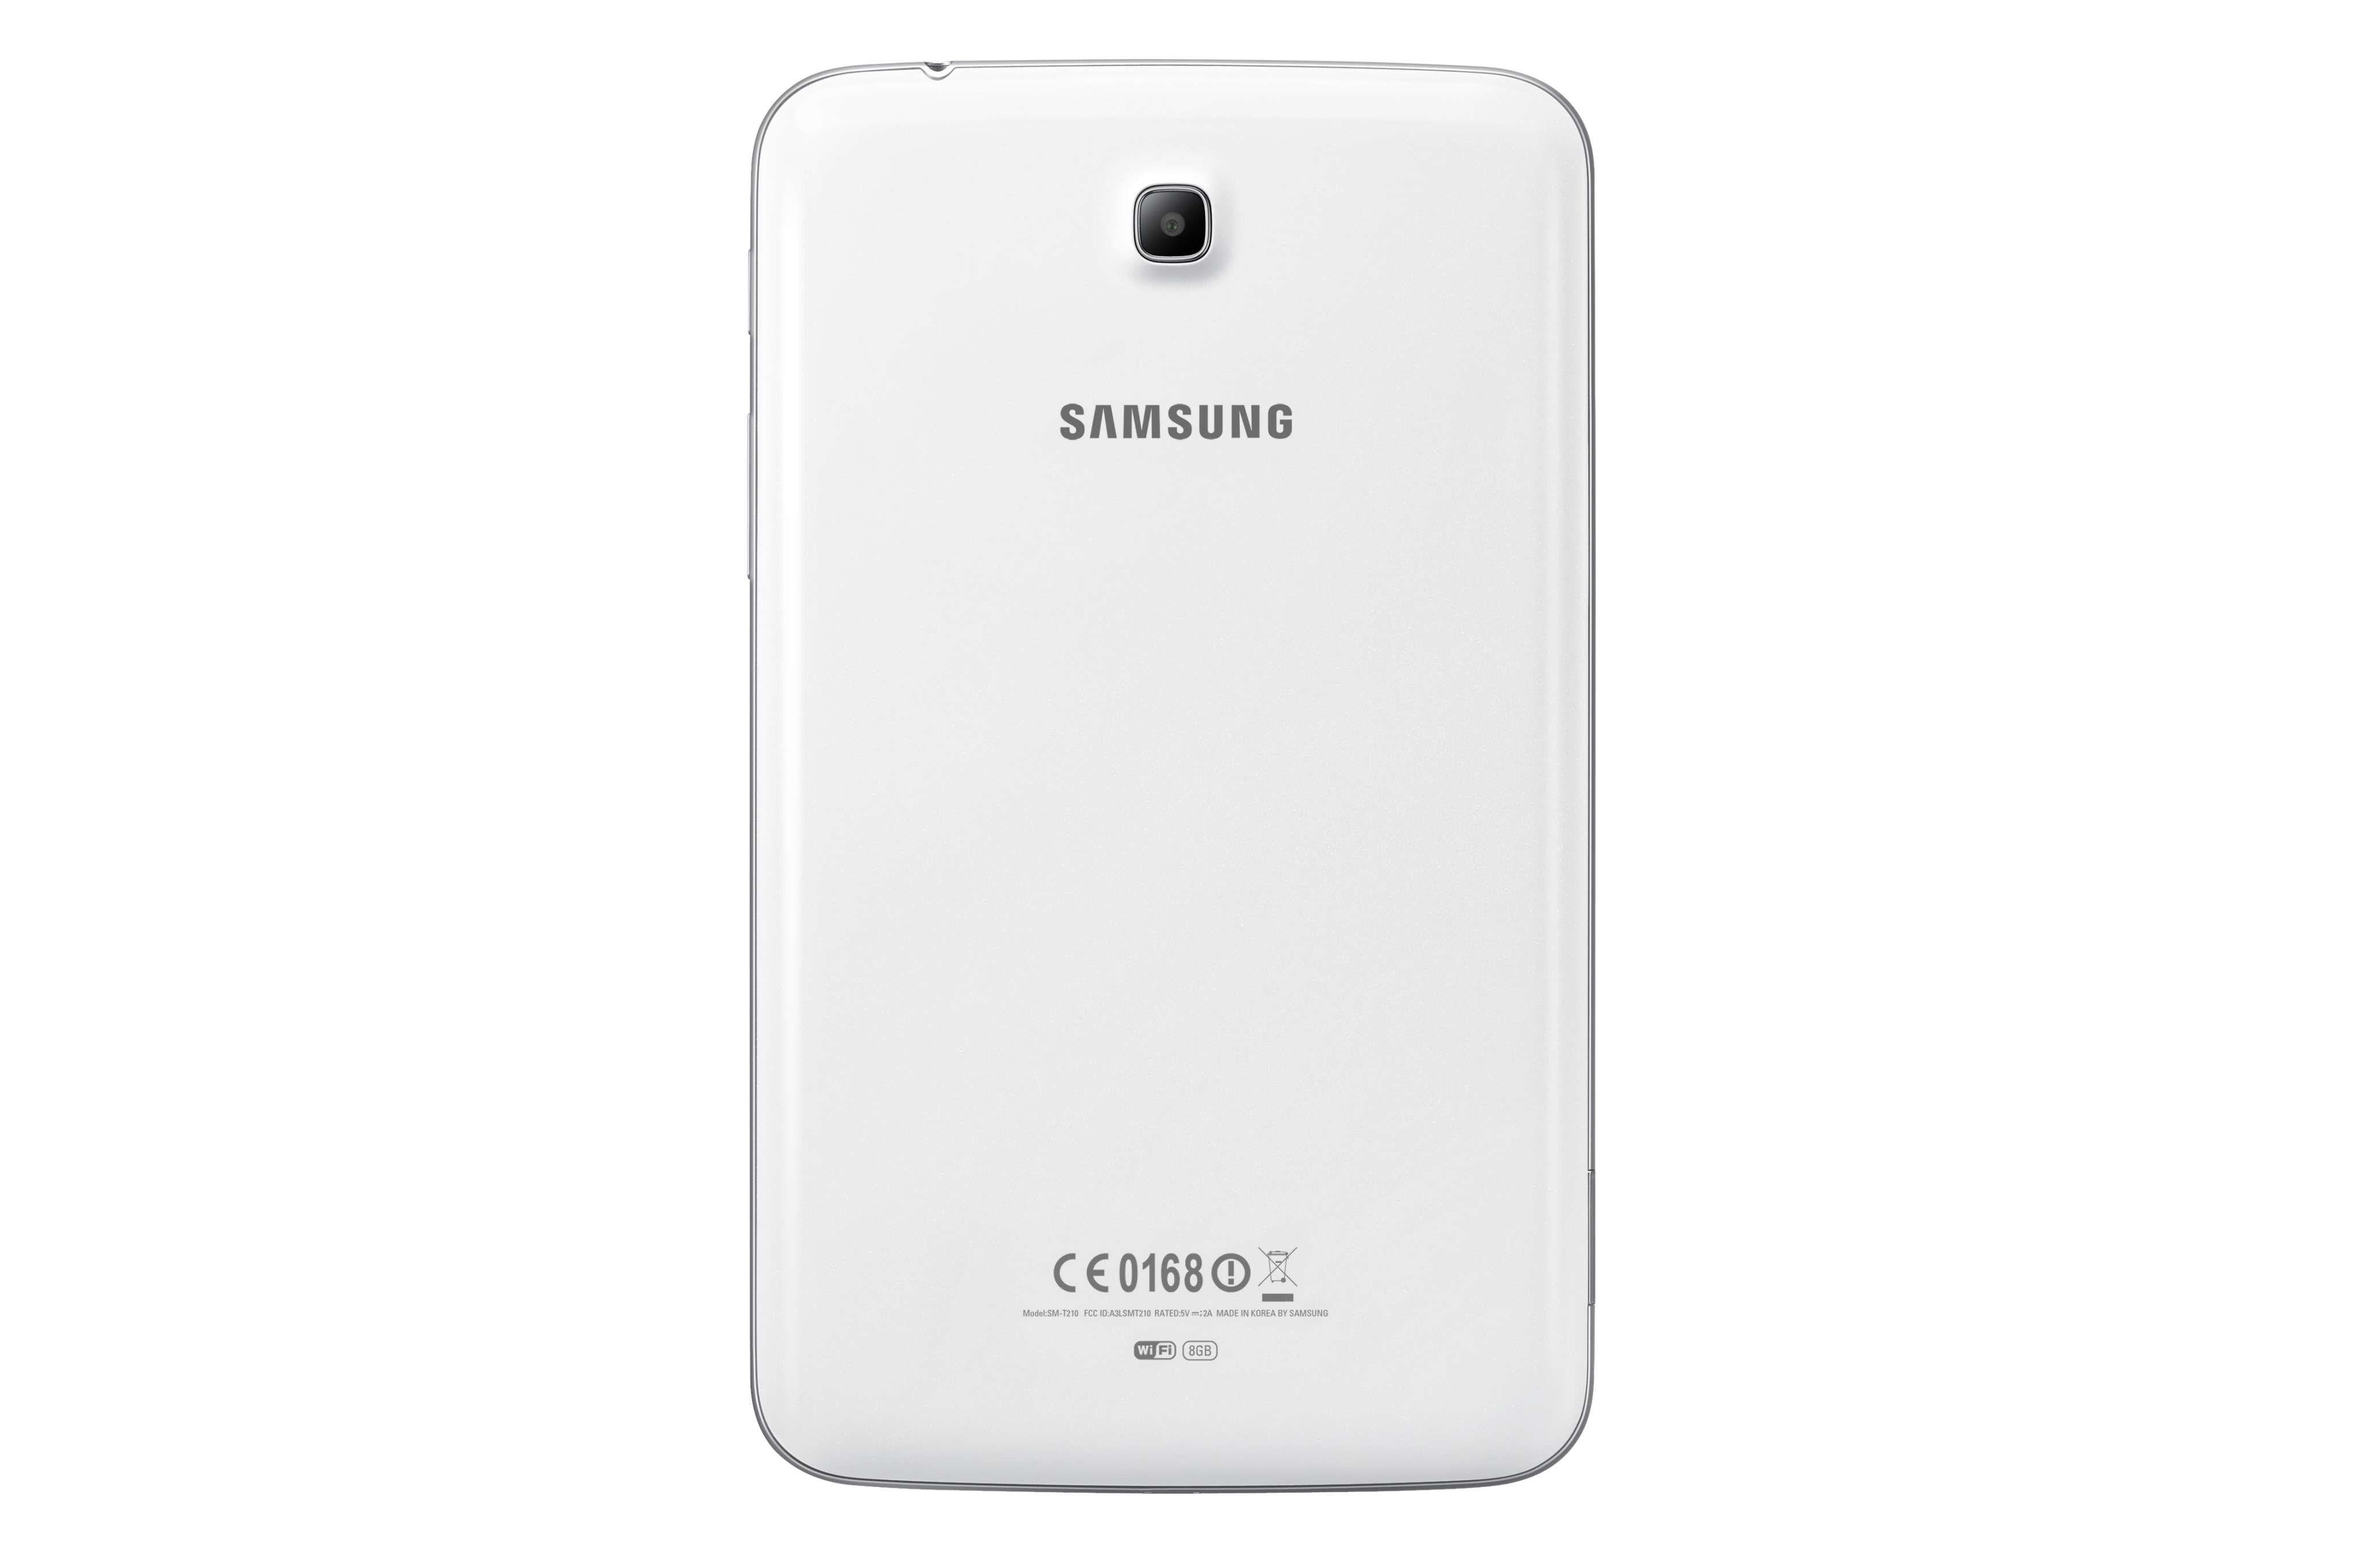 Immagine pubblicata in relazione al seguente contenuto: Samsung lancia il tablet da 7-inch GALAXY Tab 3. Foto e specifiche | Nome immagine: news19450_tablet-Samsung-GALAXY-Tab-3-7-inch_3.jpg